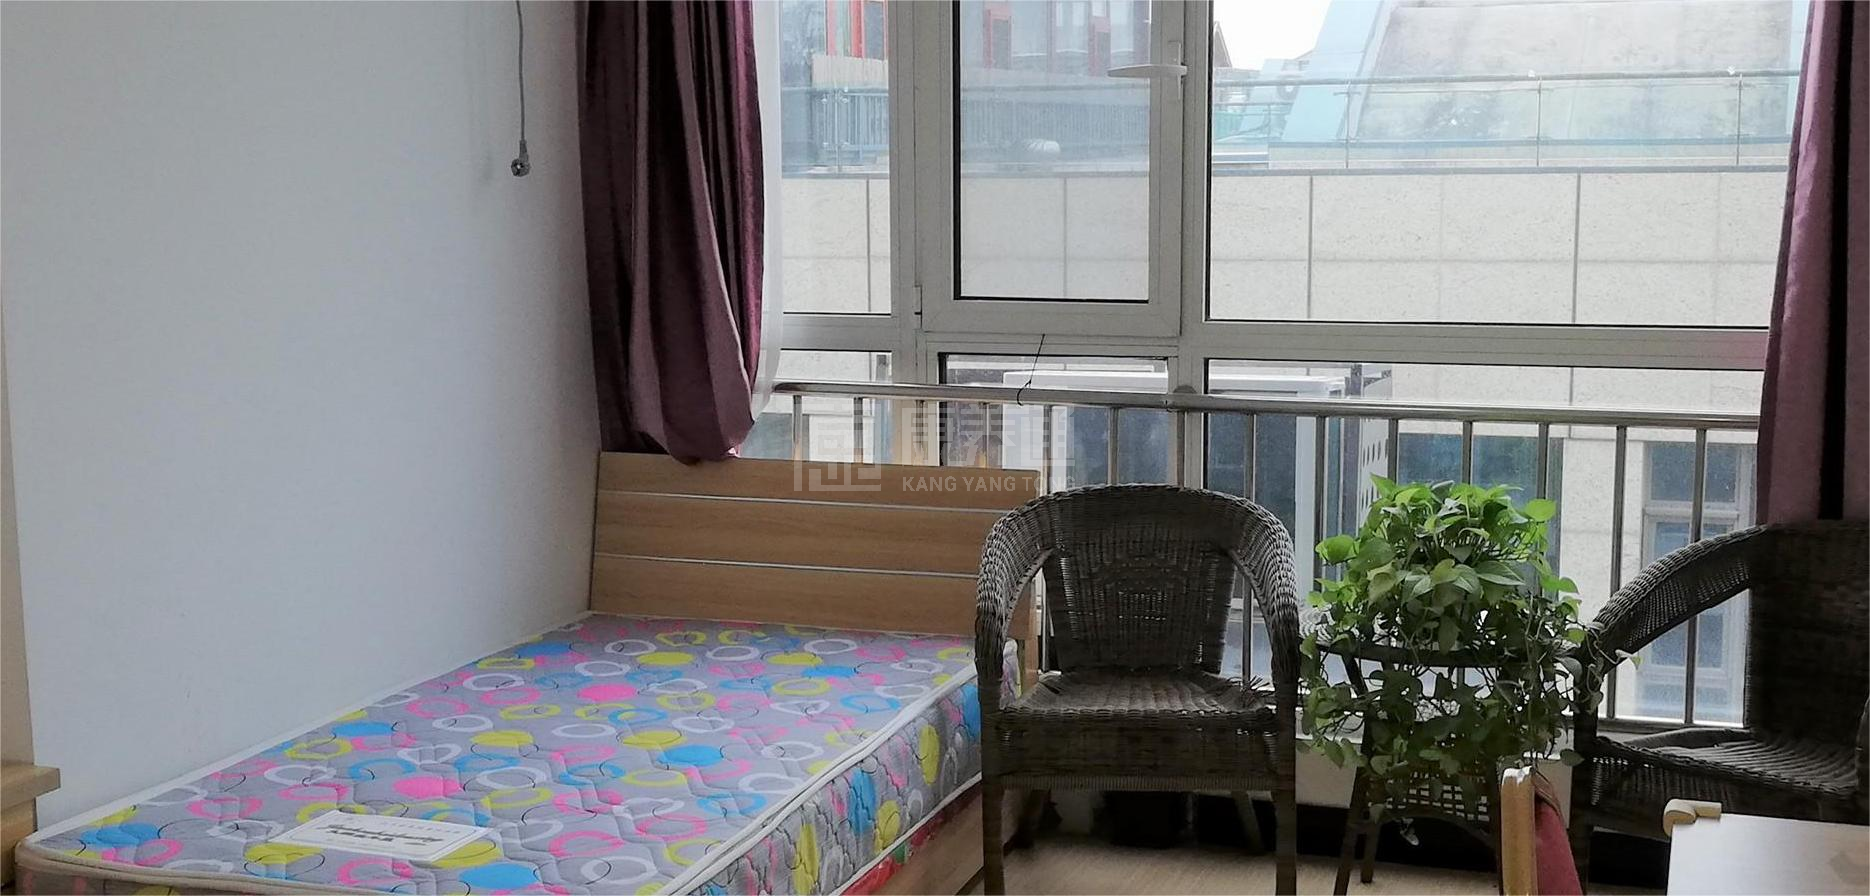 北京市朝阳区馨蘭之家老年公寓服务项目图4让长者主动而自立地生活